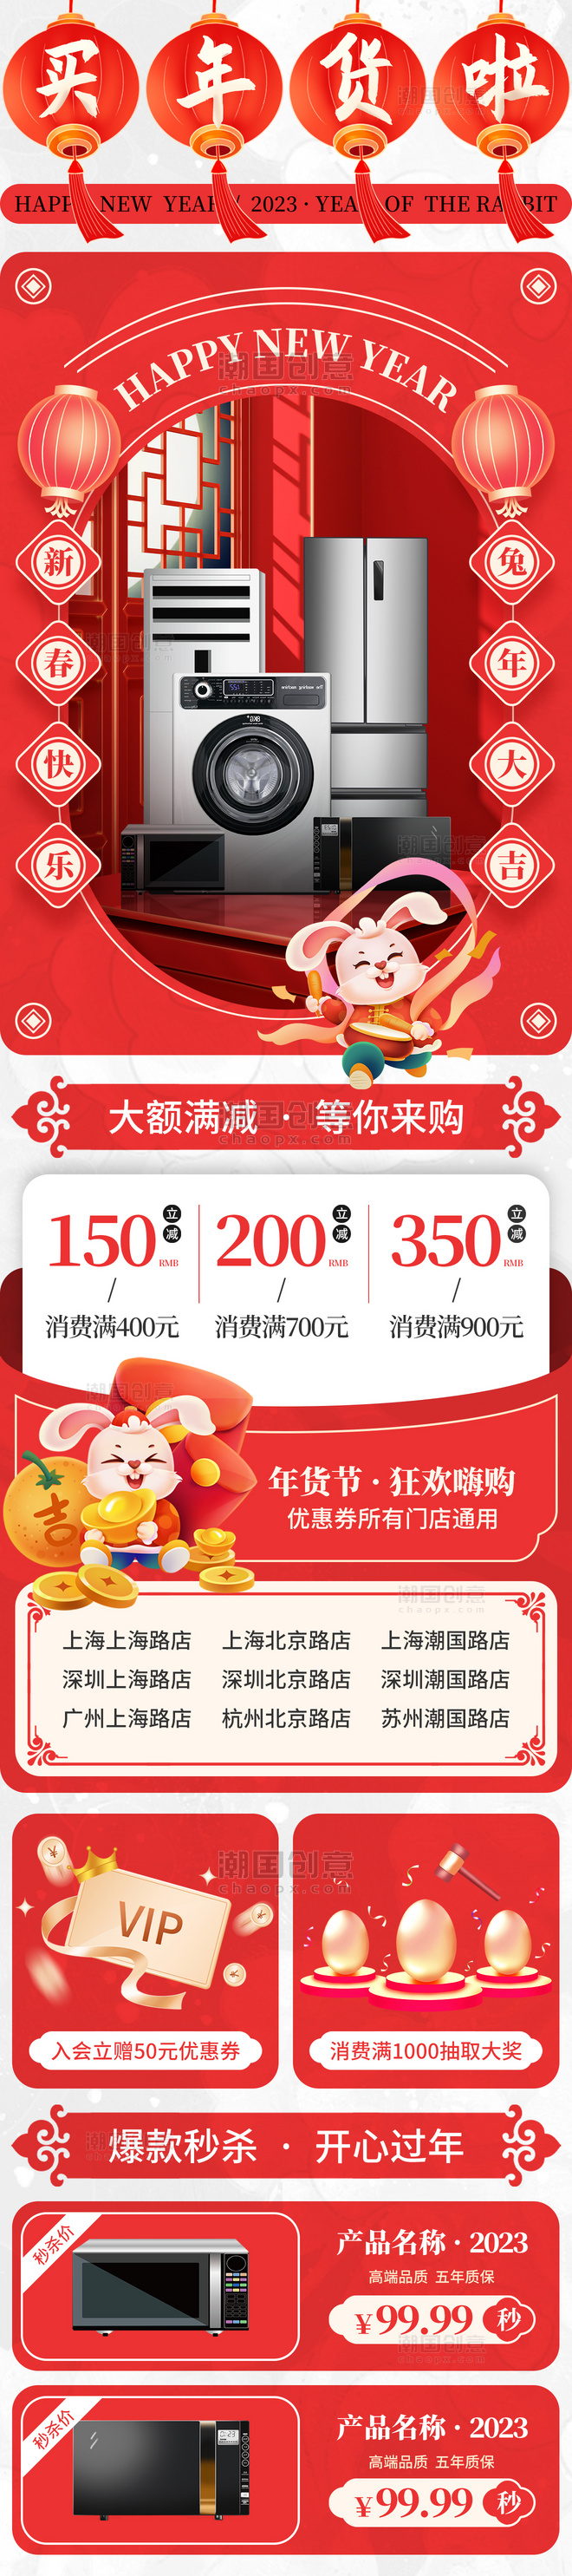 红色喜庆兔年年货节家电电器促销H5长图